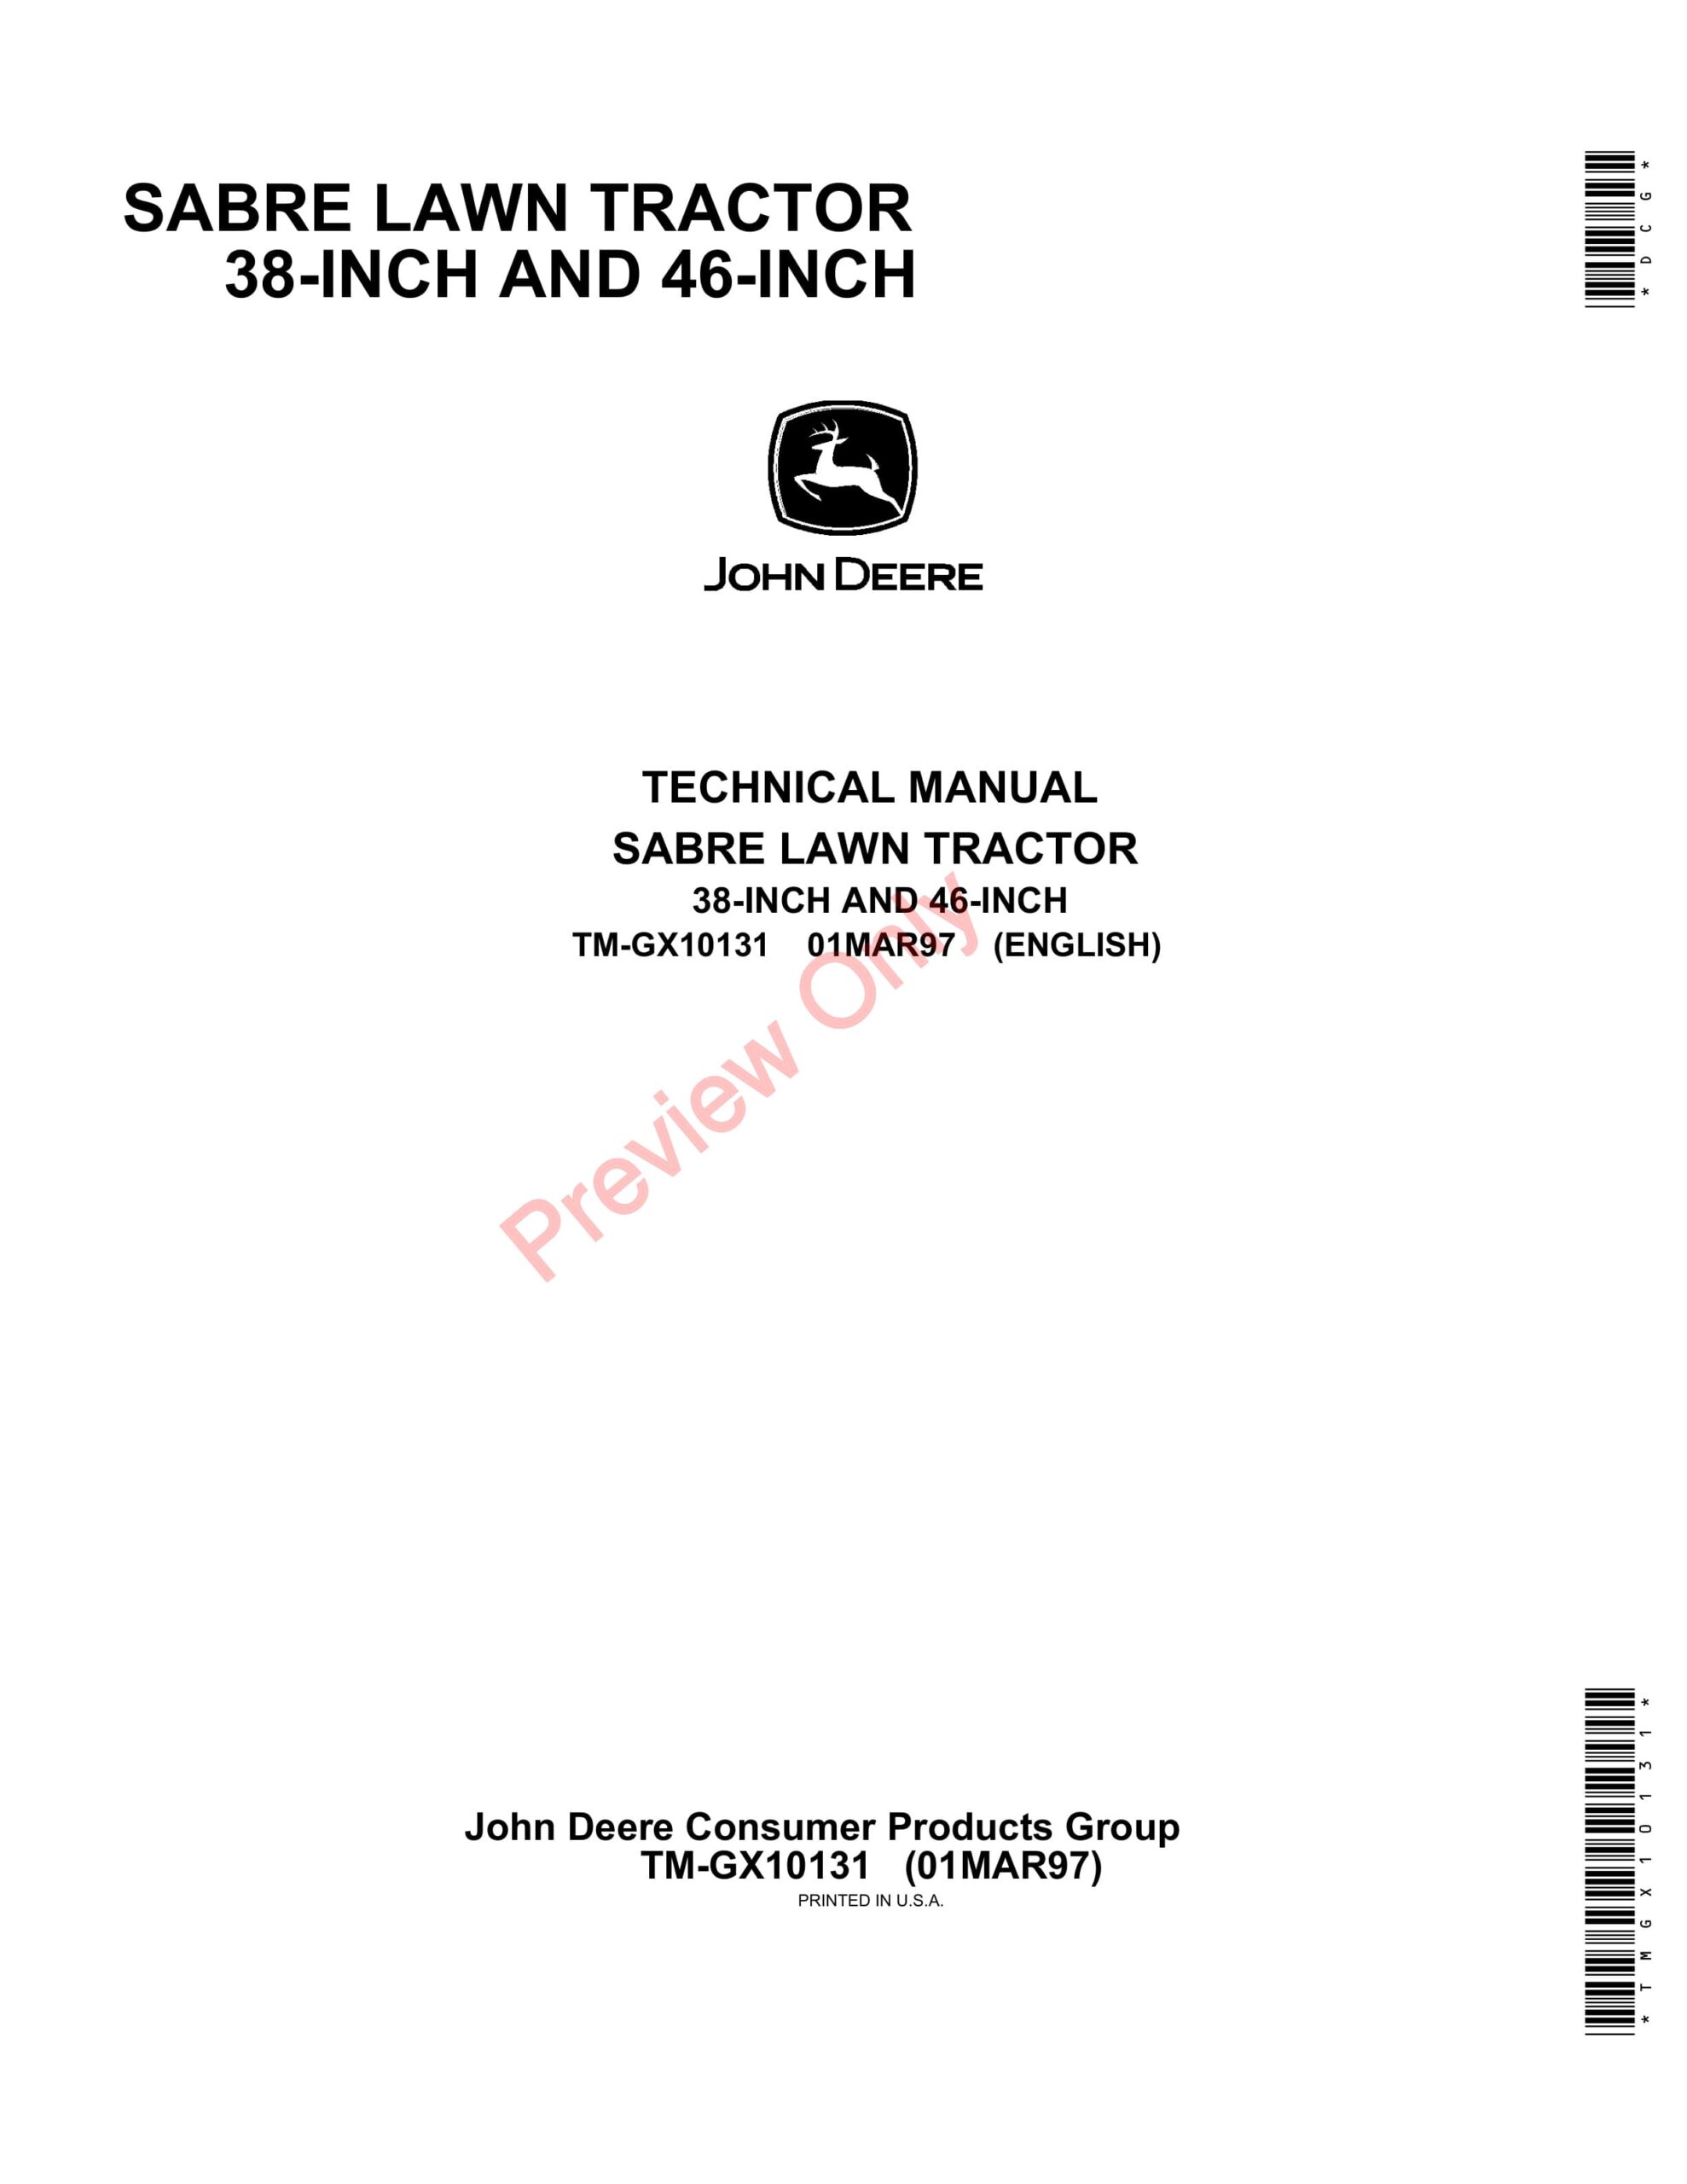 John Deere Sabre Lawn Tractors Technical Manual TMGX10131 01MAR97-1